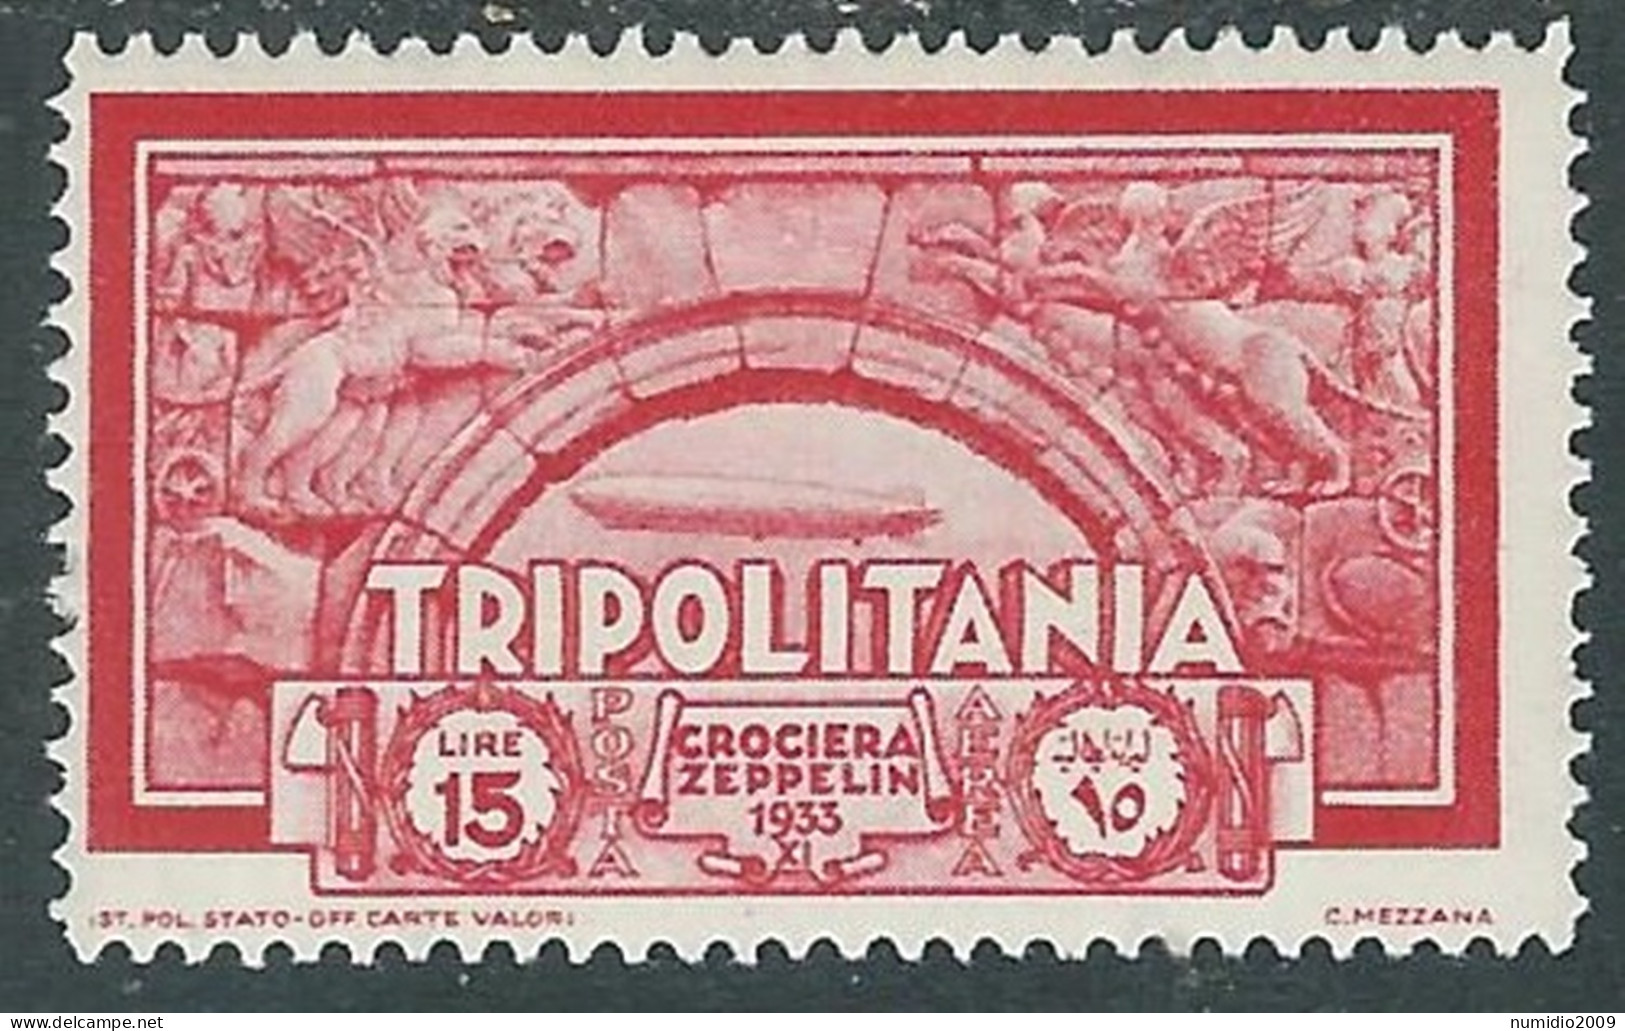 1933 TRIPOLITANIA POSTA AEREA CROCIERA ZEPPELIN 15 LIRE MH * - RA29-3 - Tripolitania